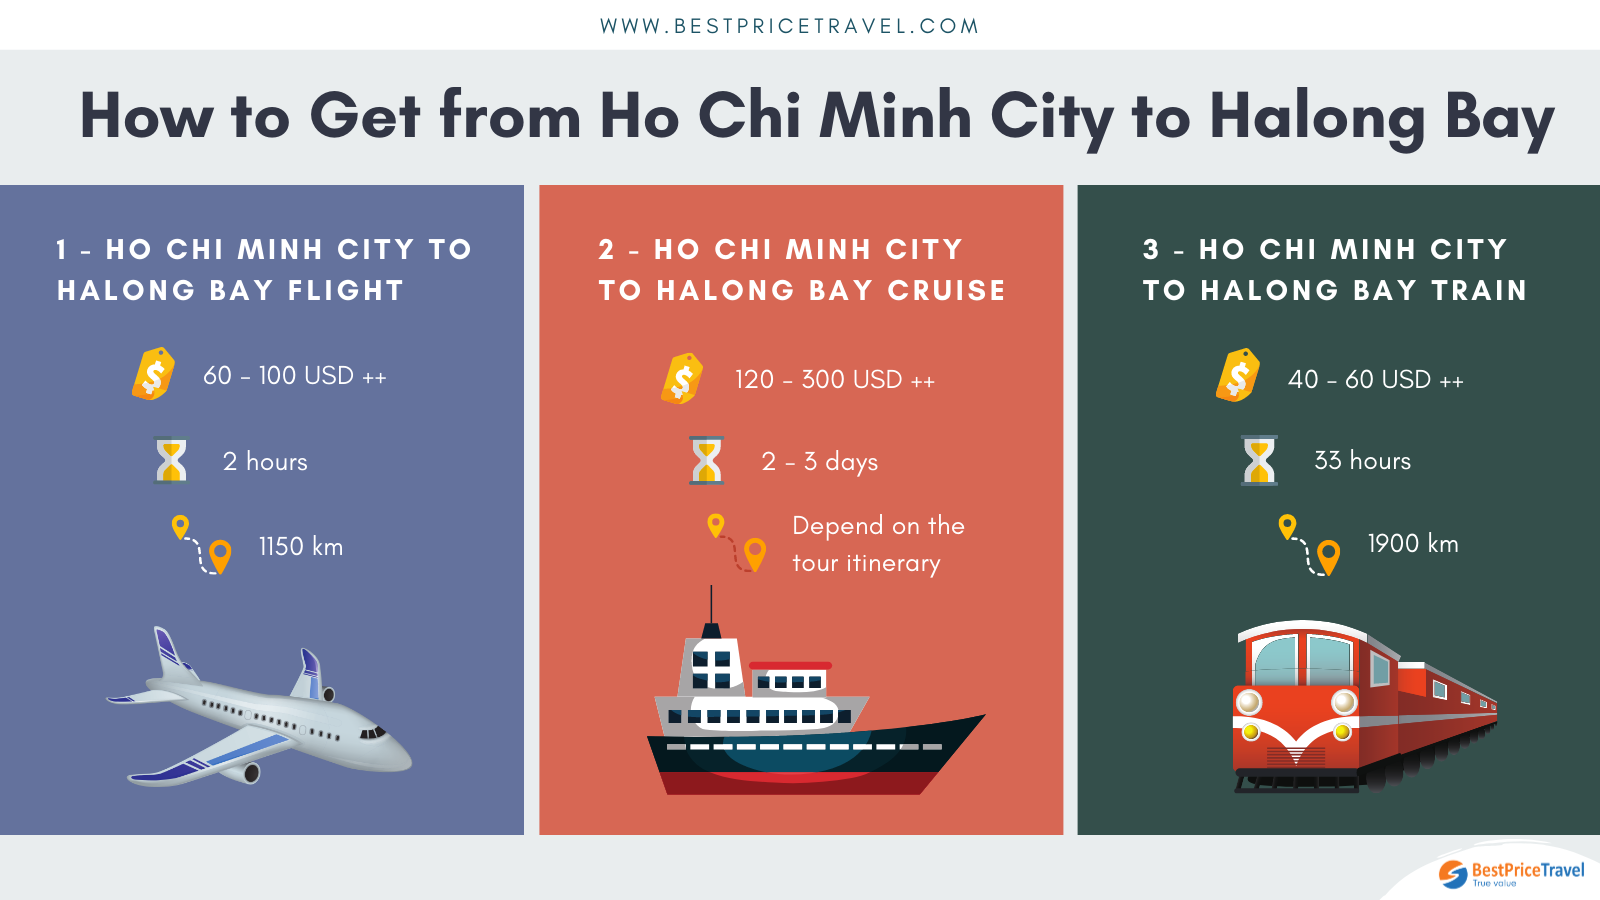 Ho Chi Minh City to Halong Bay